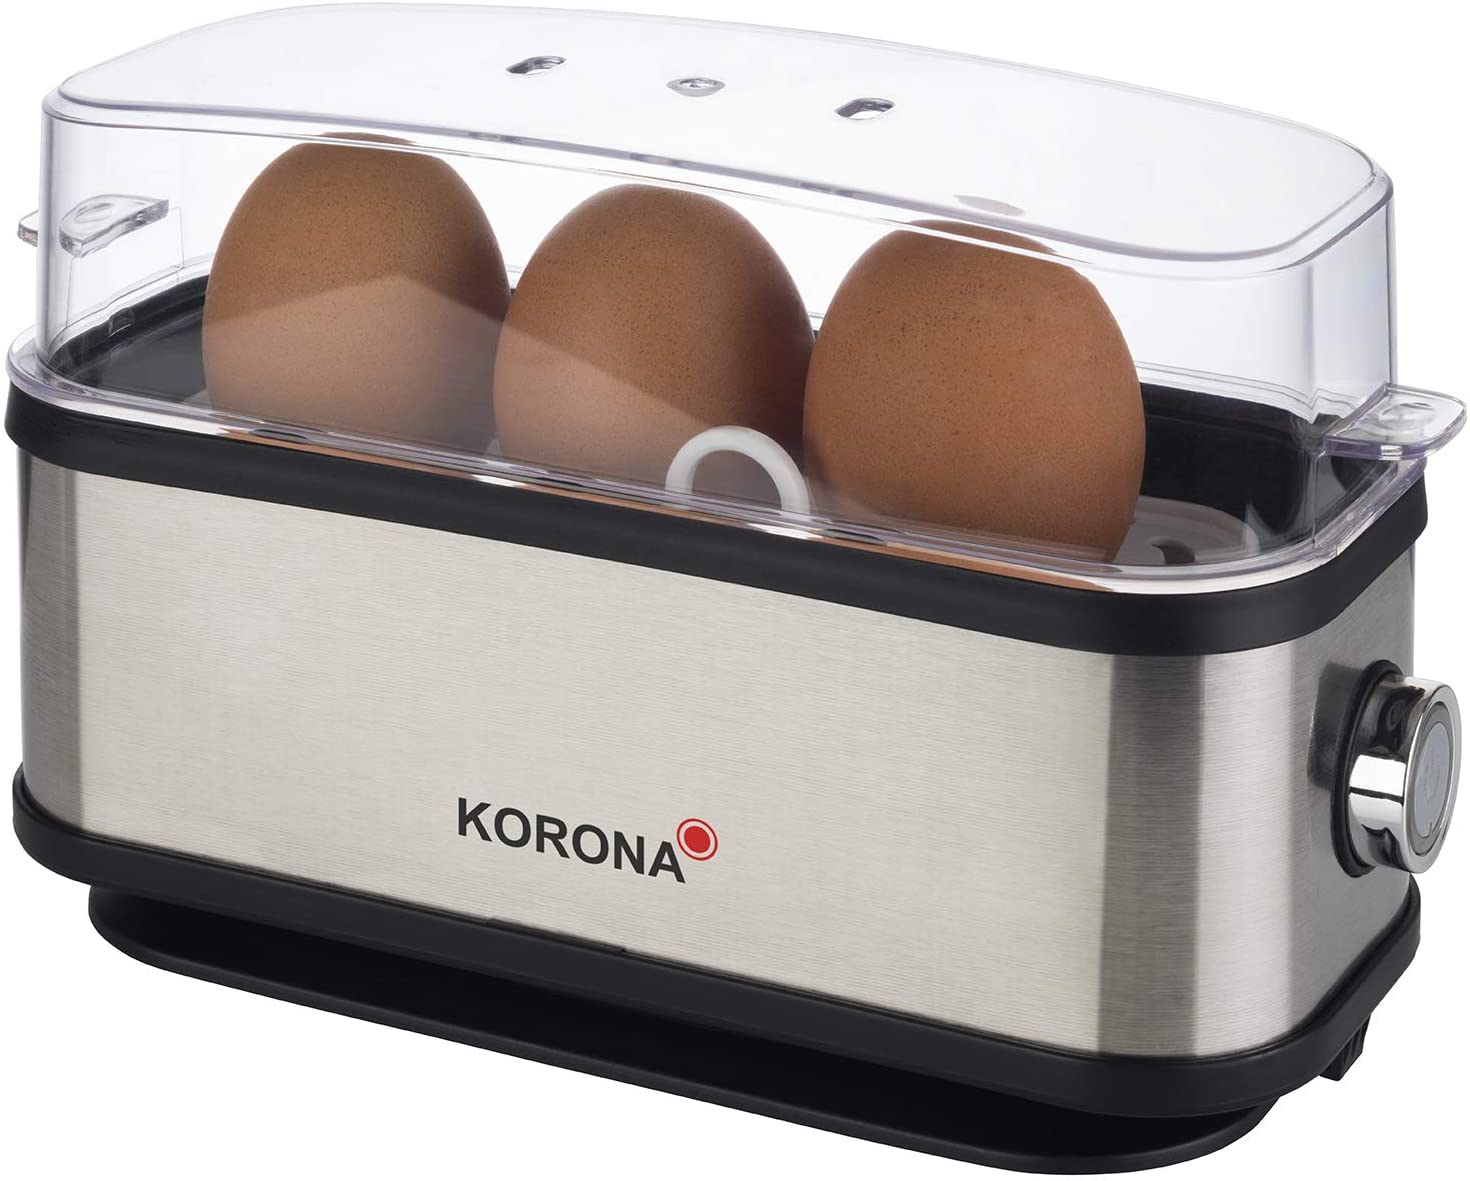 Korona 25304 Egg Cooker, 1 to 3 Eggs, Single Egg Boiler, 210 Watt, Stainless Steel Housing, Cable Reel